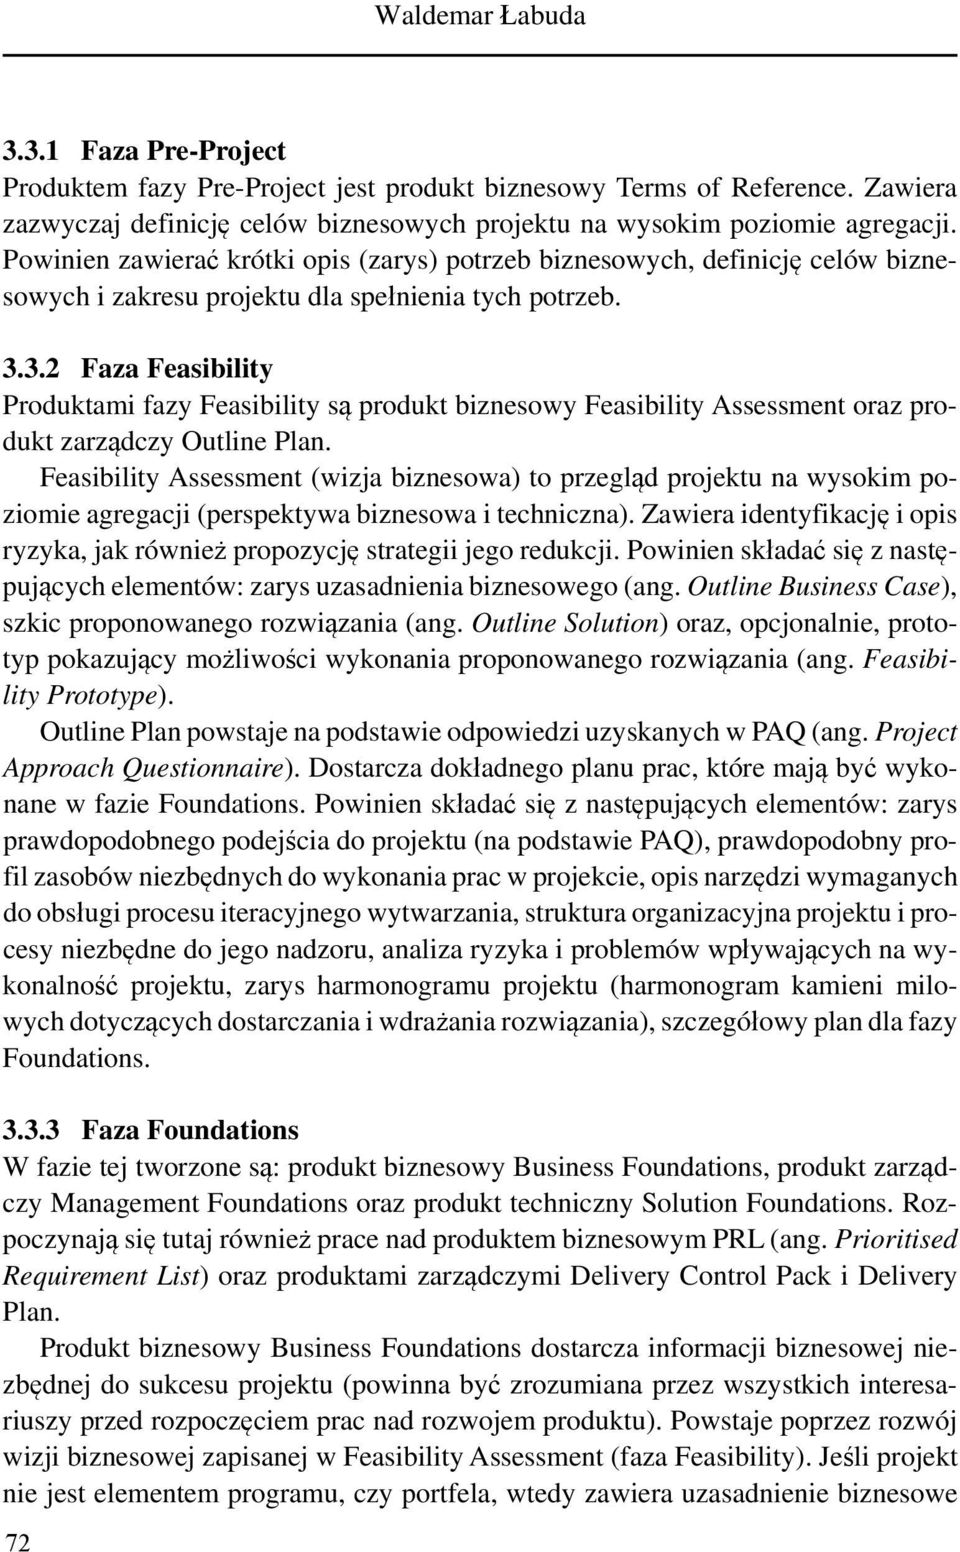 3.2 Faza Feasibility Produktami fazy Feasibility są produkt biznesowy Feasibility Assessment oraz produkt zarządczy Outline Plan.